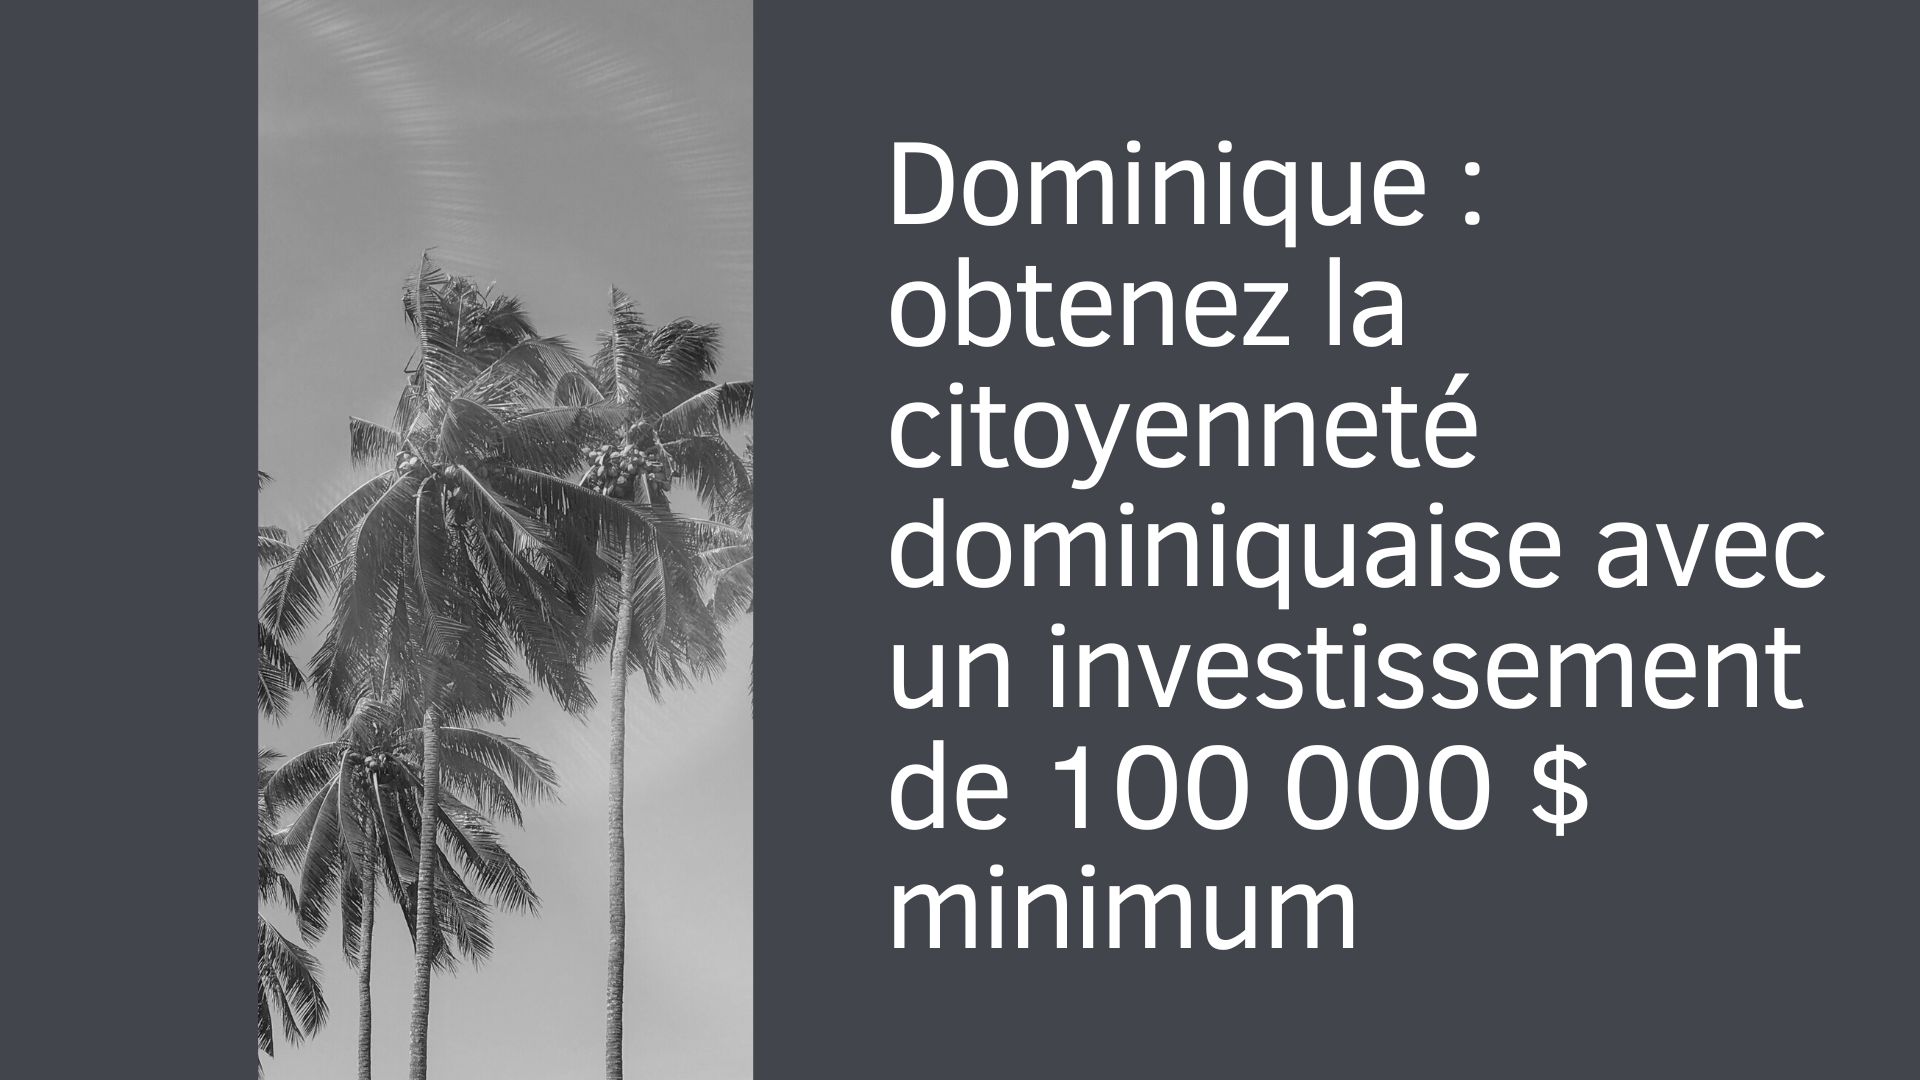 Dominique : obtenez la citoyenneté dominiquaise avec un investissement de 100 000 $ minimum